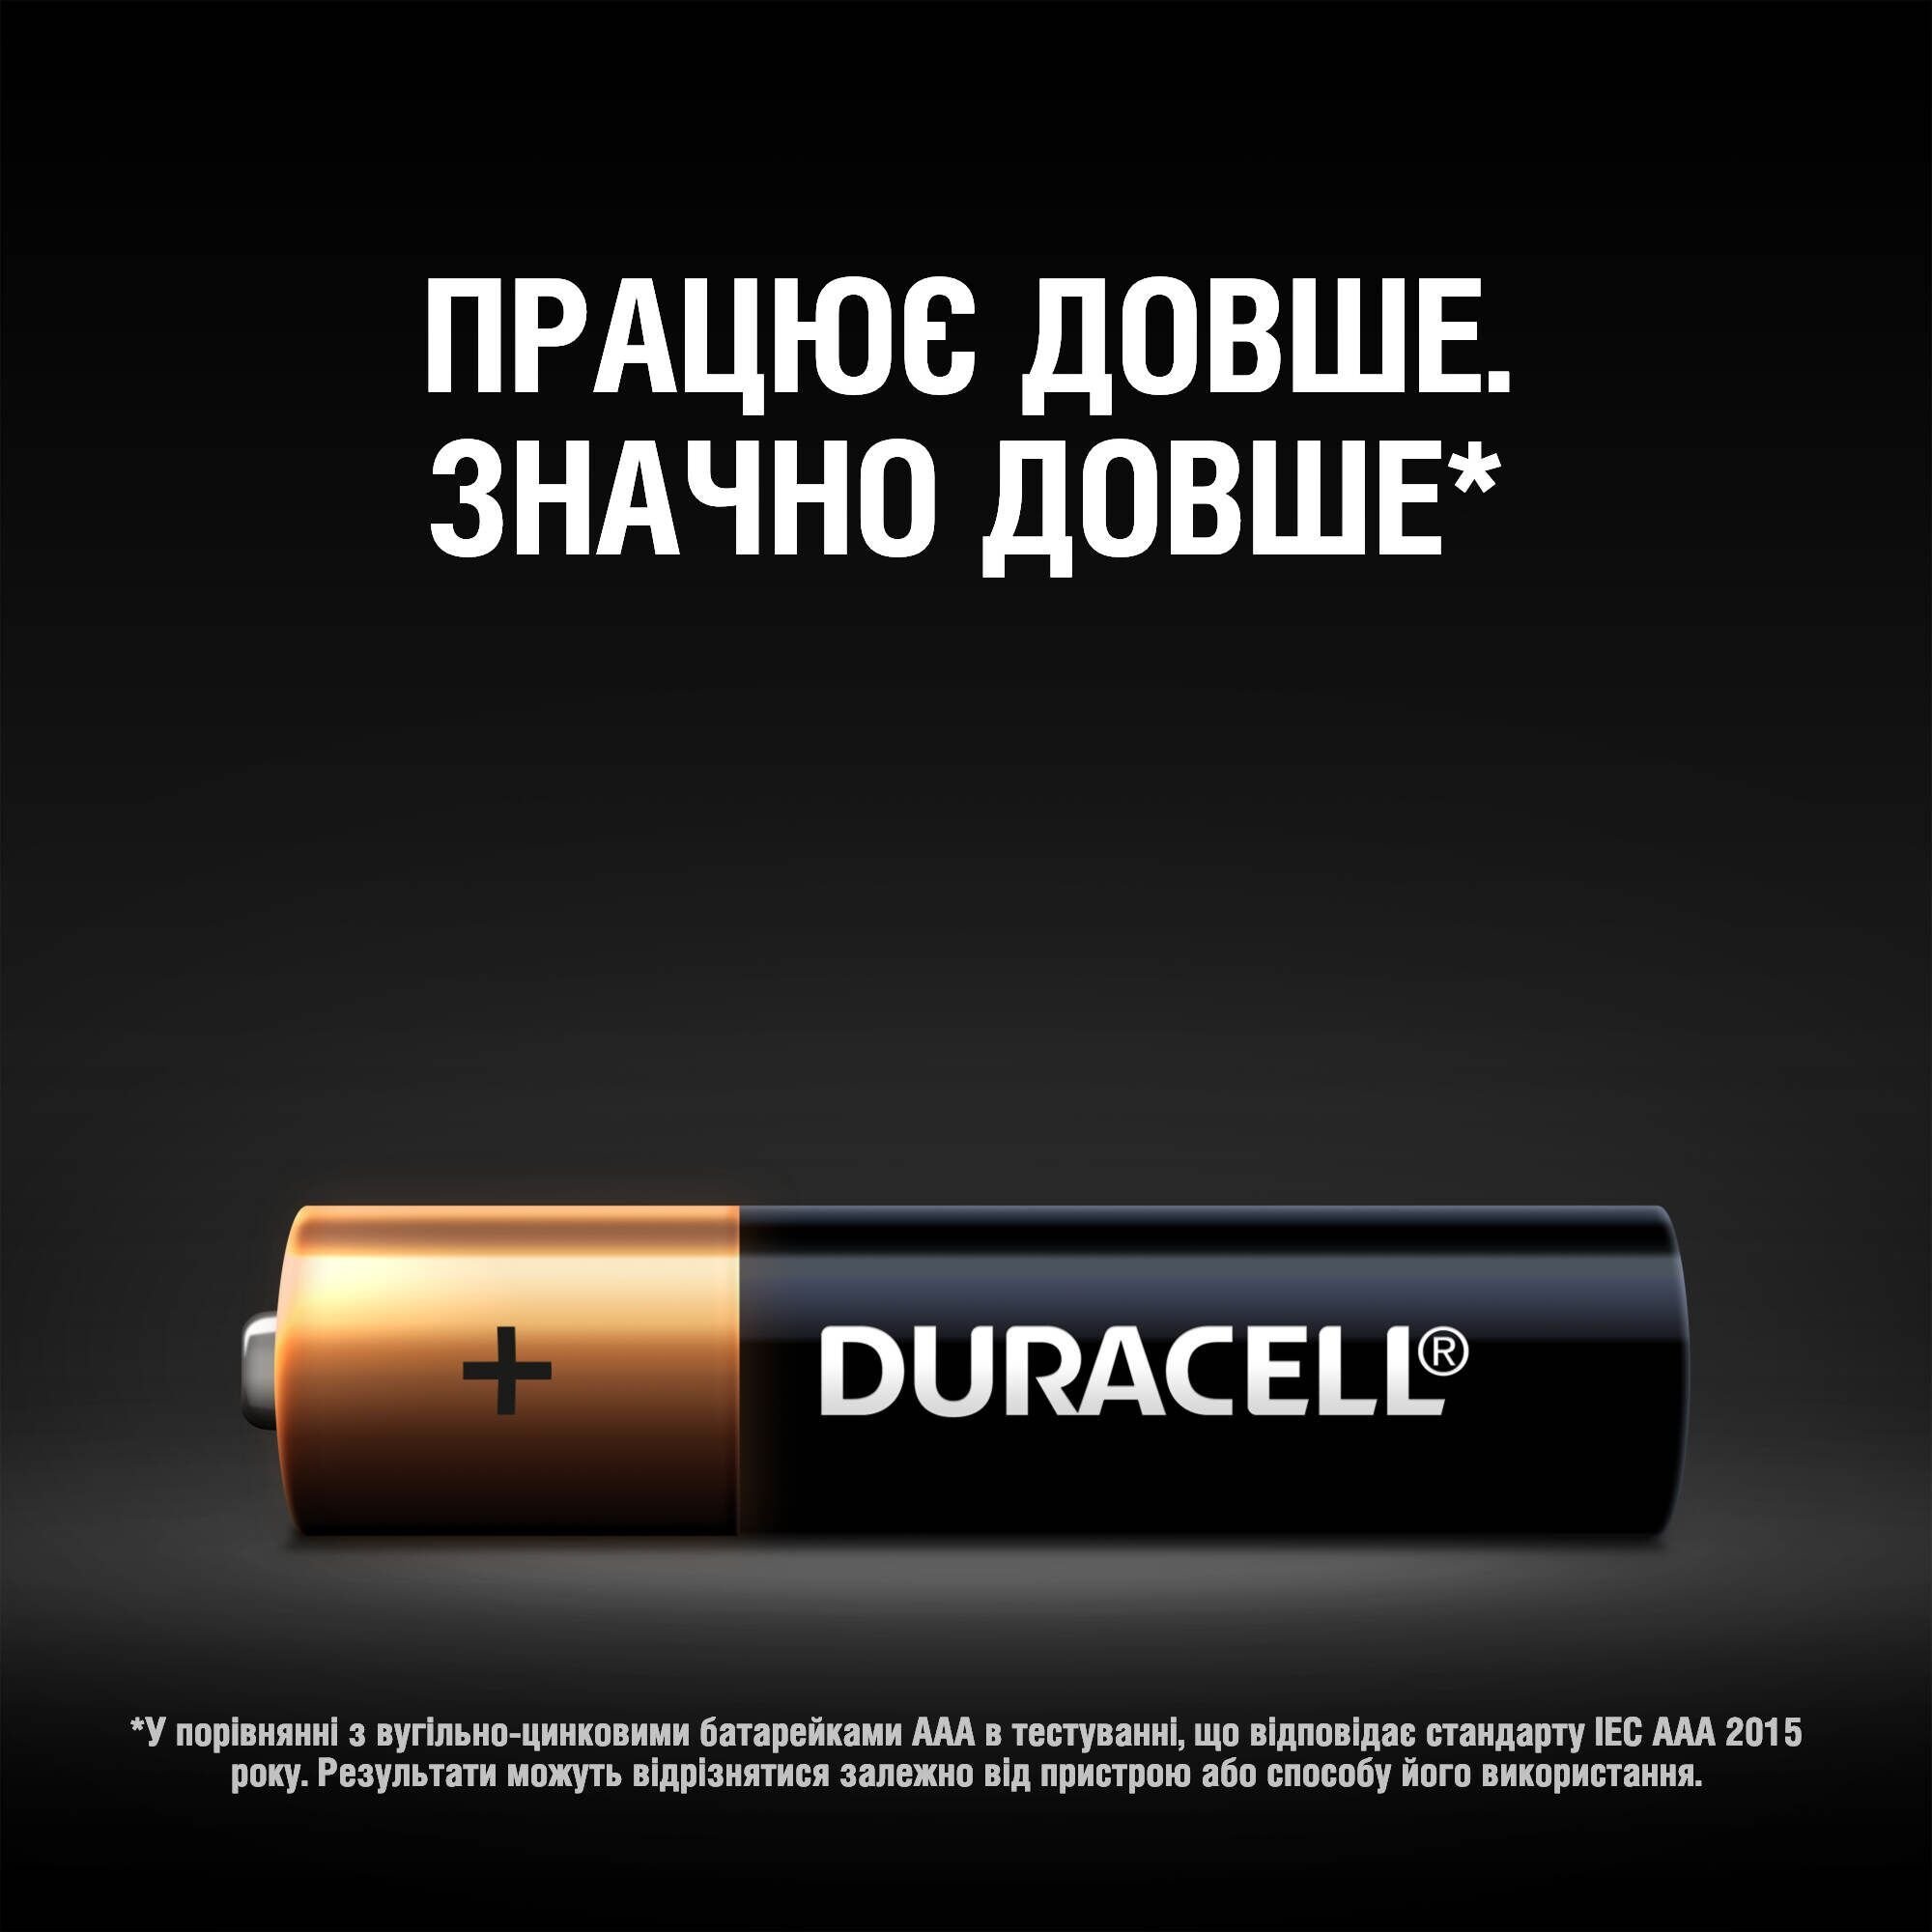 Лужні батарейки мізинчикові Duracell 1.5 V AAA LR03/MN2400, 18 шт. (737056) - фото 7